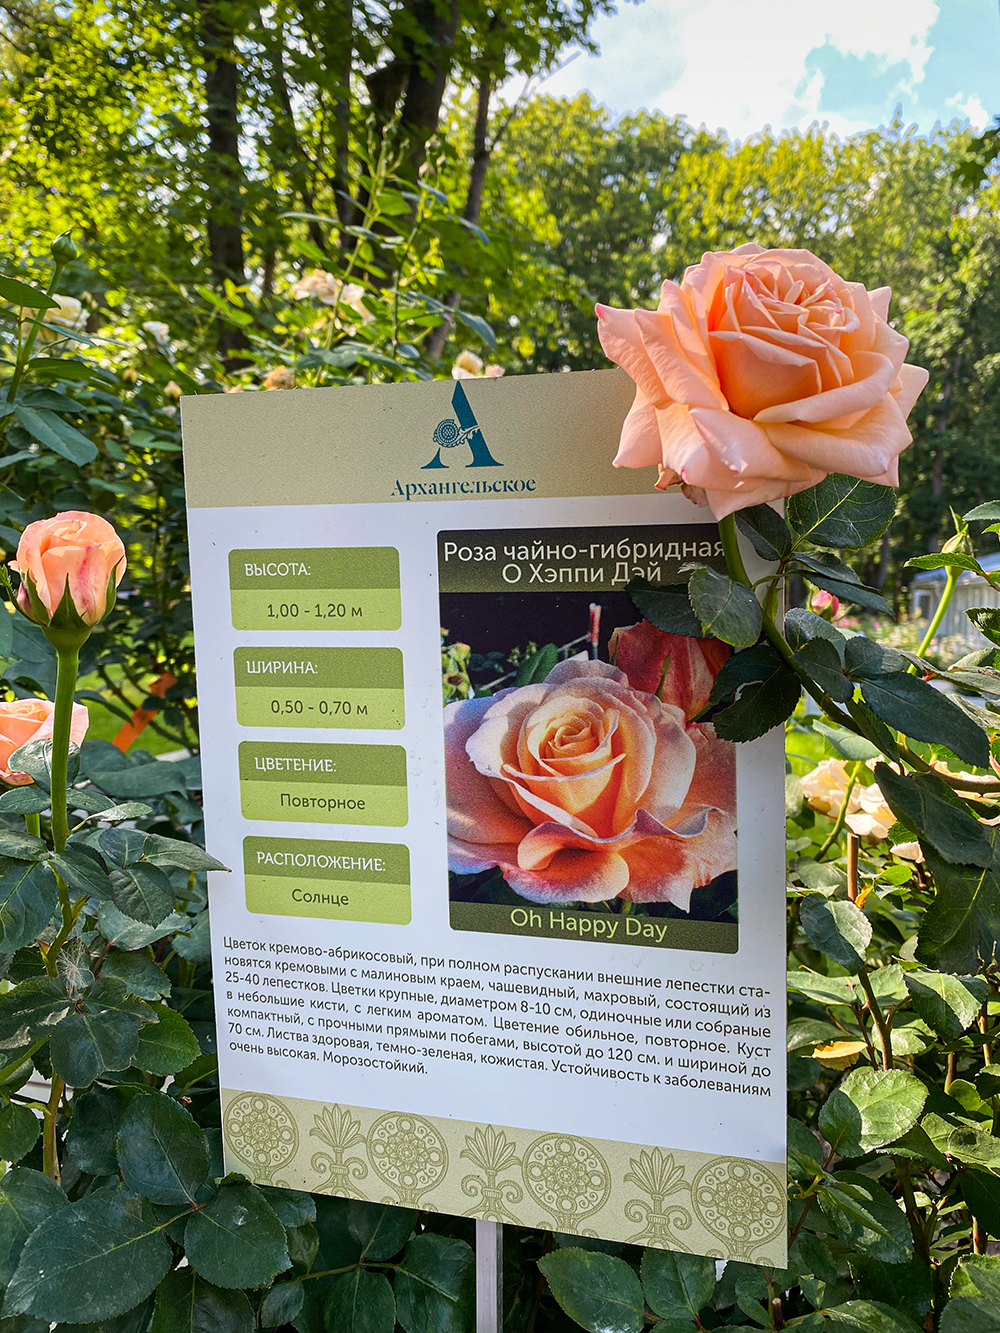 В августе в парке проходил «Фестиваль роз и ботанических затей». Разнообразие роз поразило